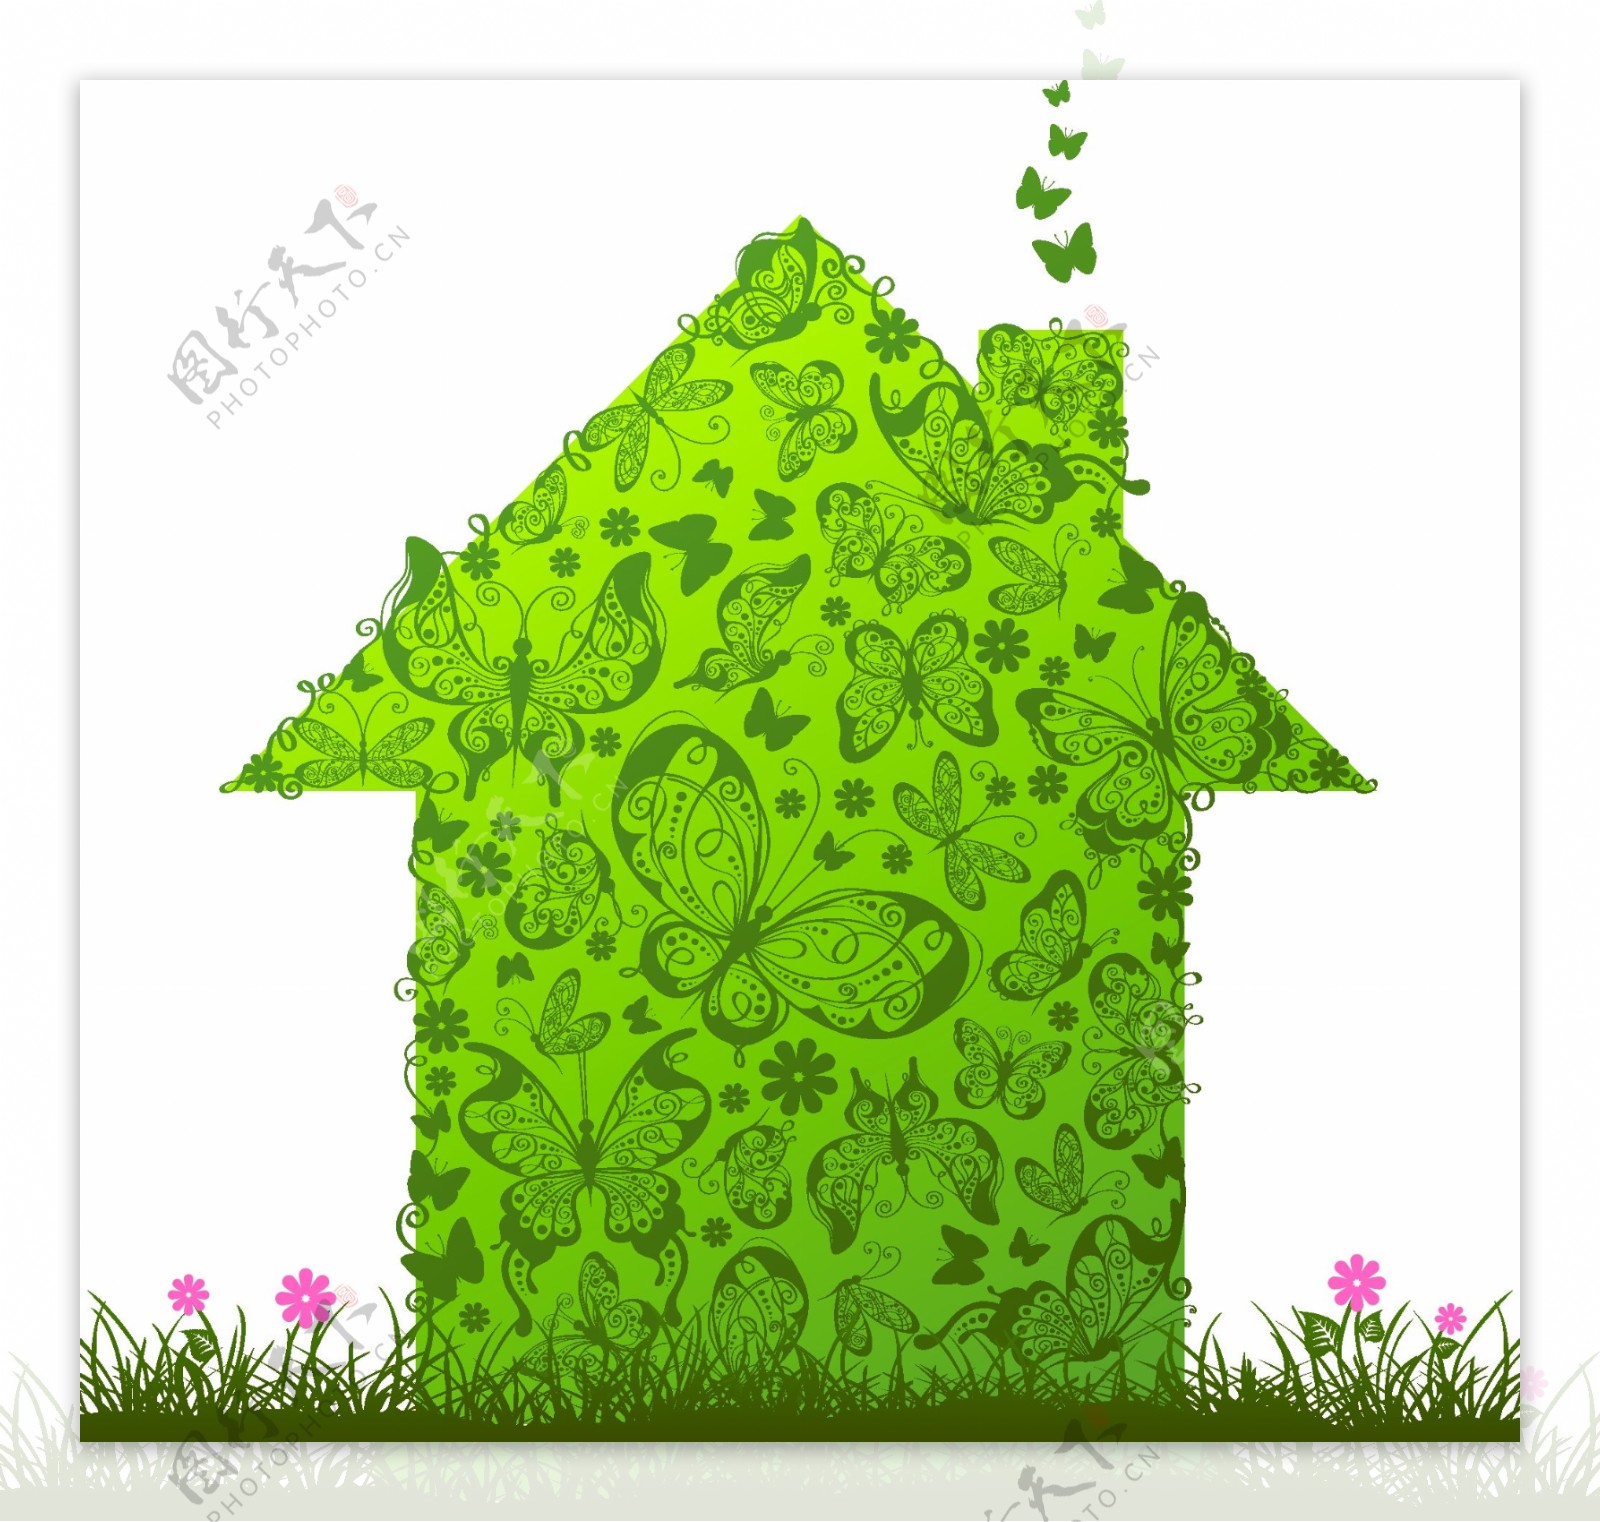 绿色房子和箱子矢量素材